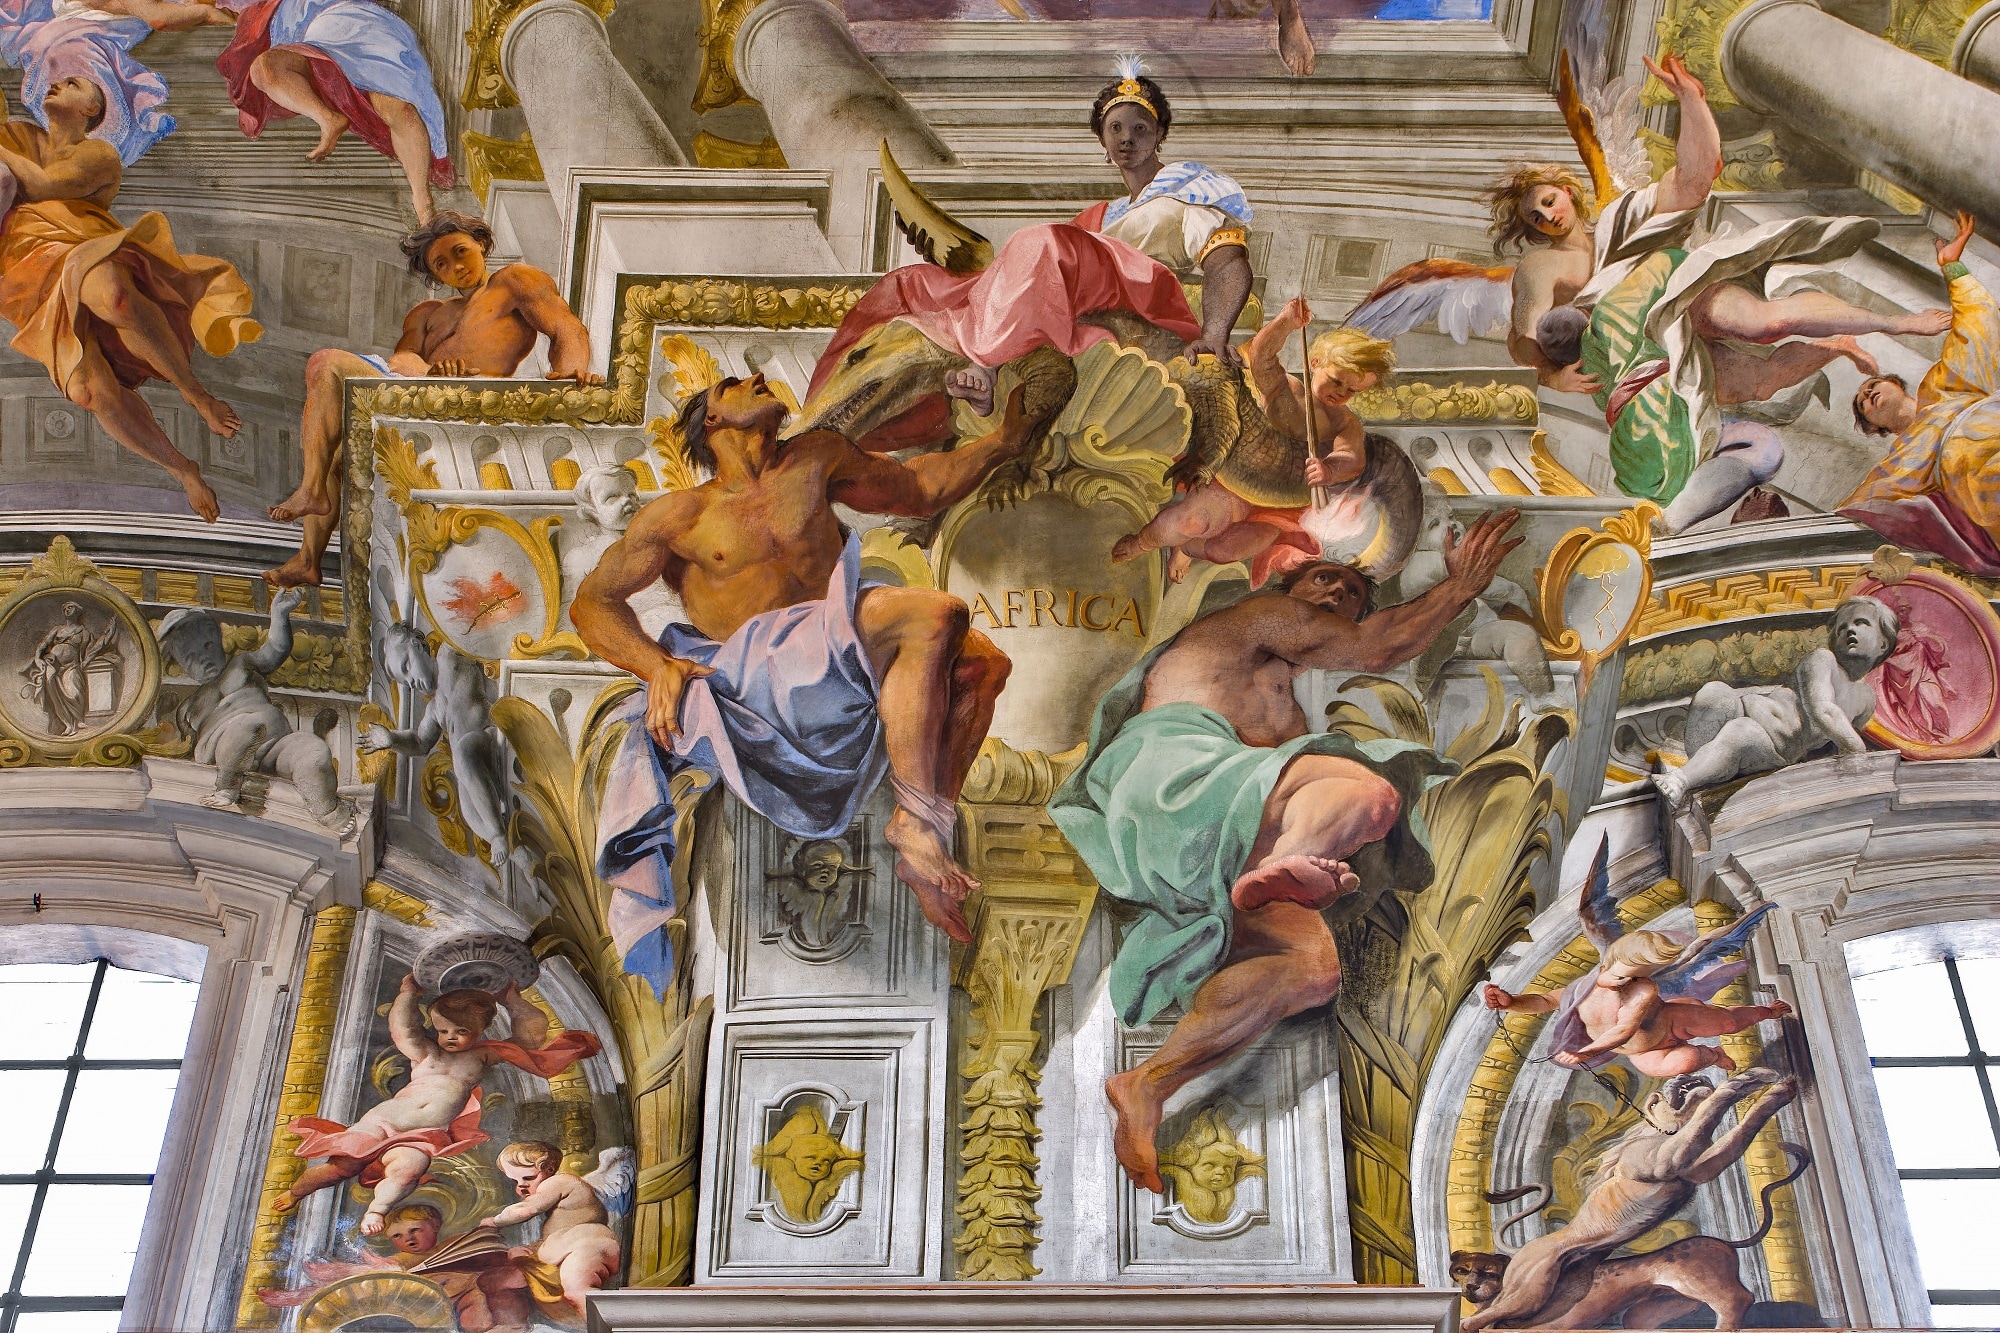 Africa, dettaglio della Gloria di Sant’Ignazio, Andrea Pozzo, 1691-1694, Chiesa di Sant’Ignazio di Loyola, Roma